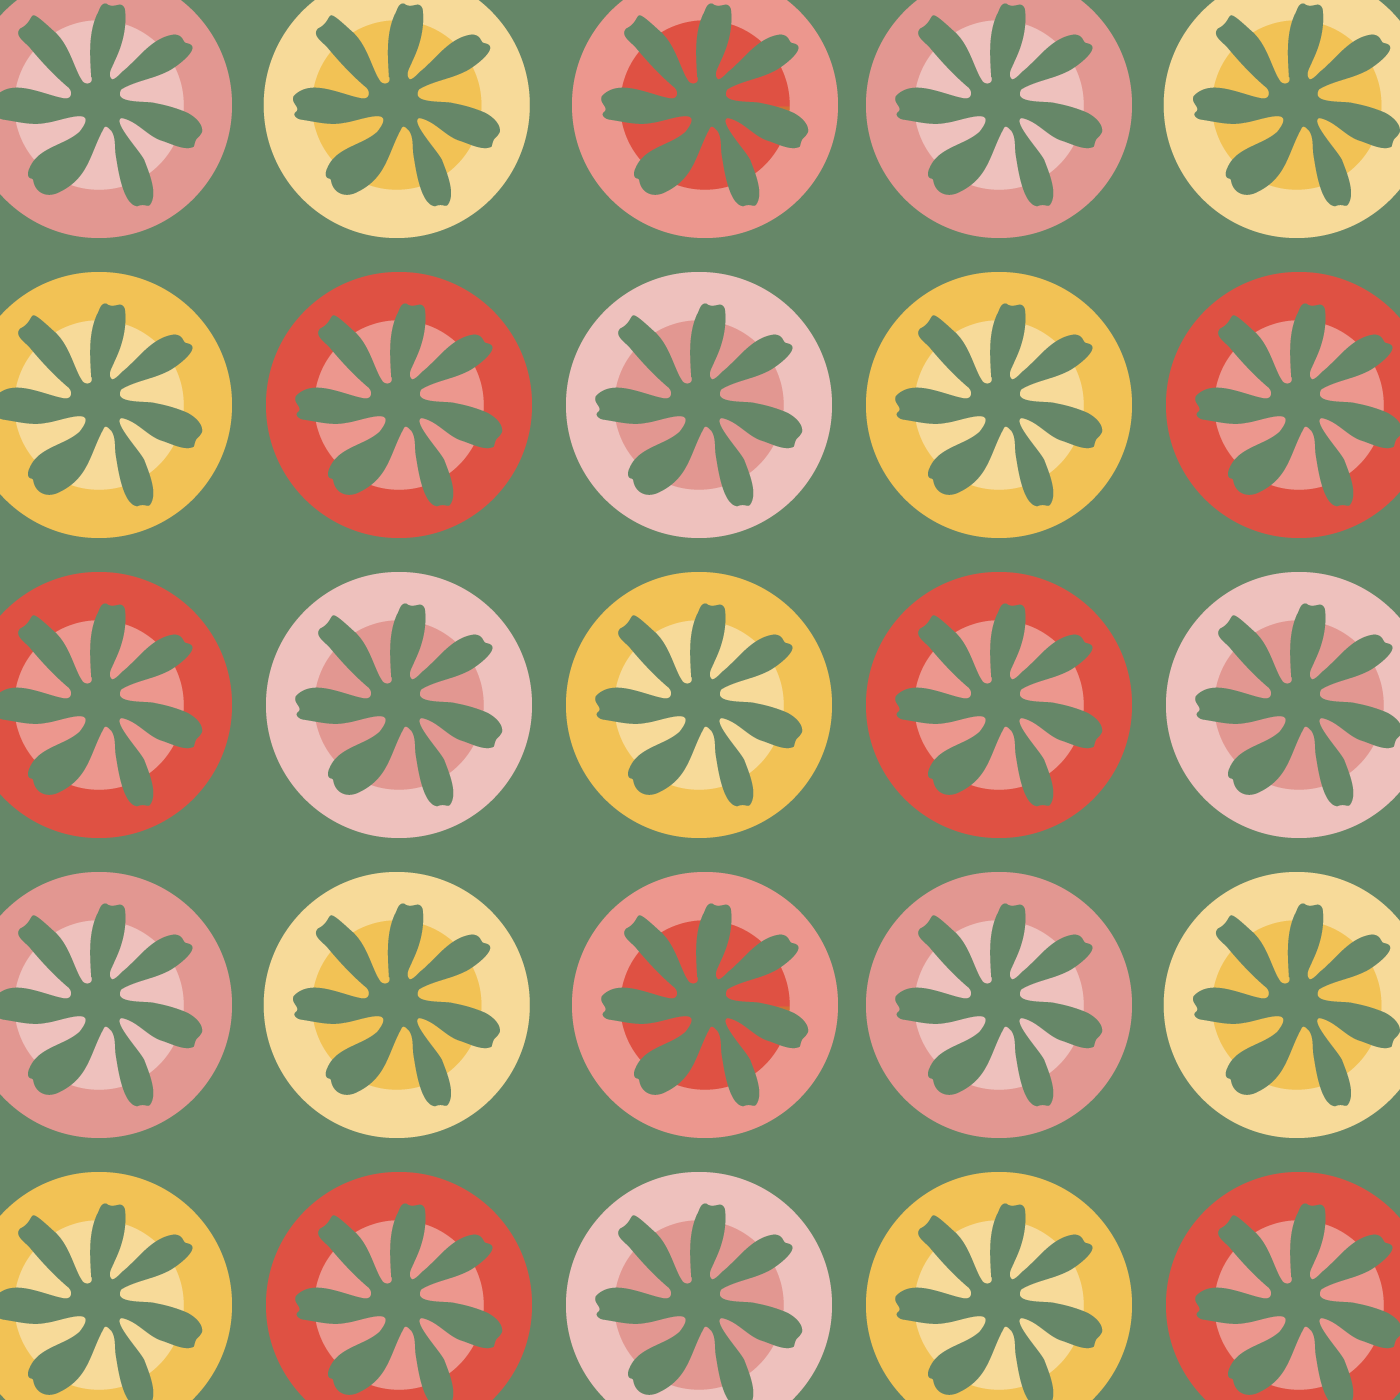 Floral Grid in Vintage Colors